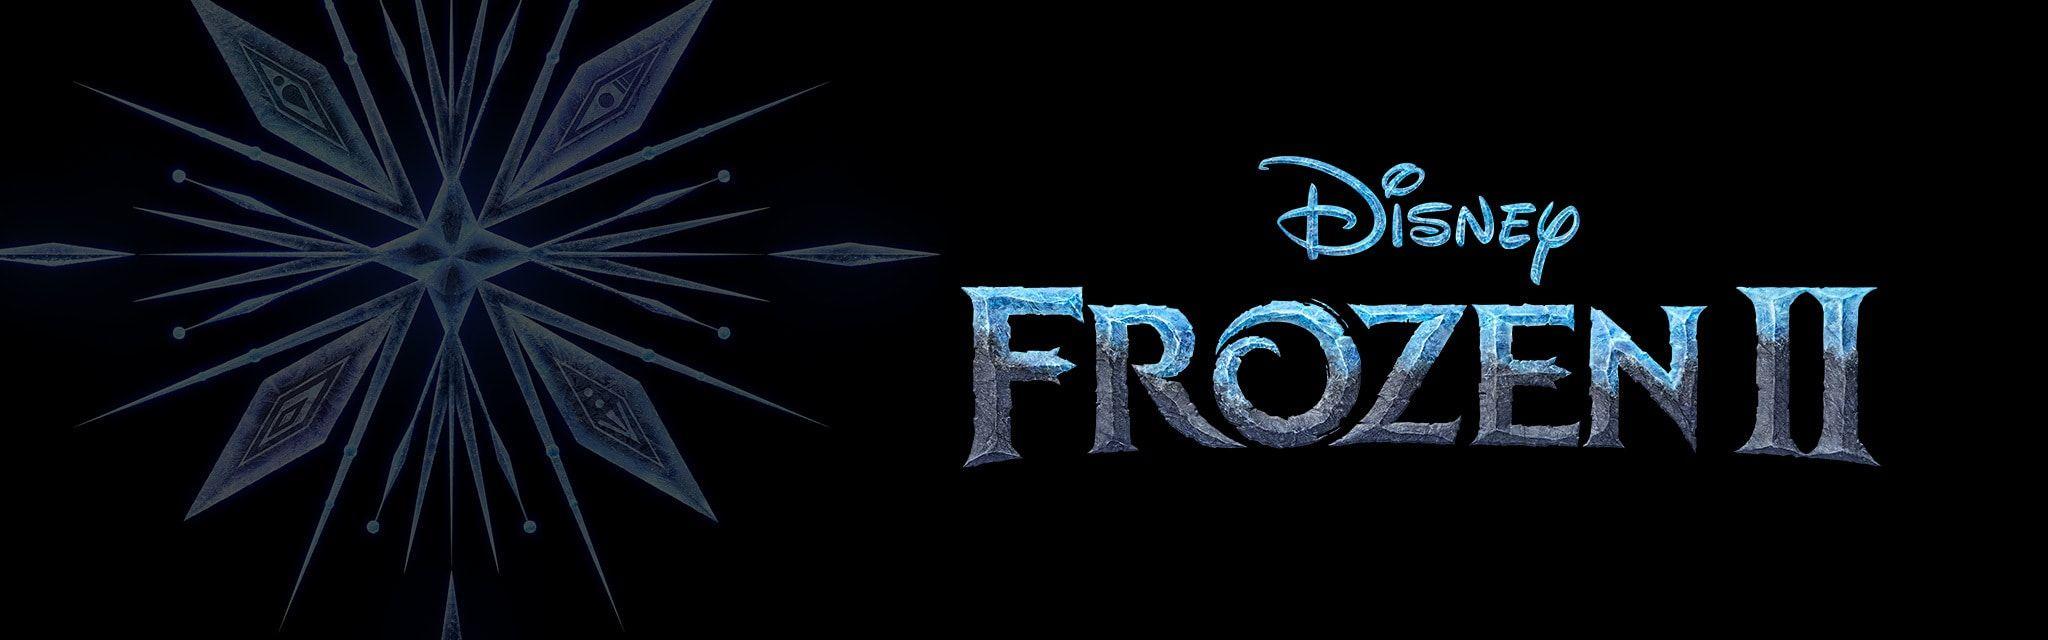 Walt Disney Home Logo - Disney Movies | Official Site